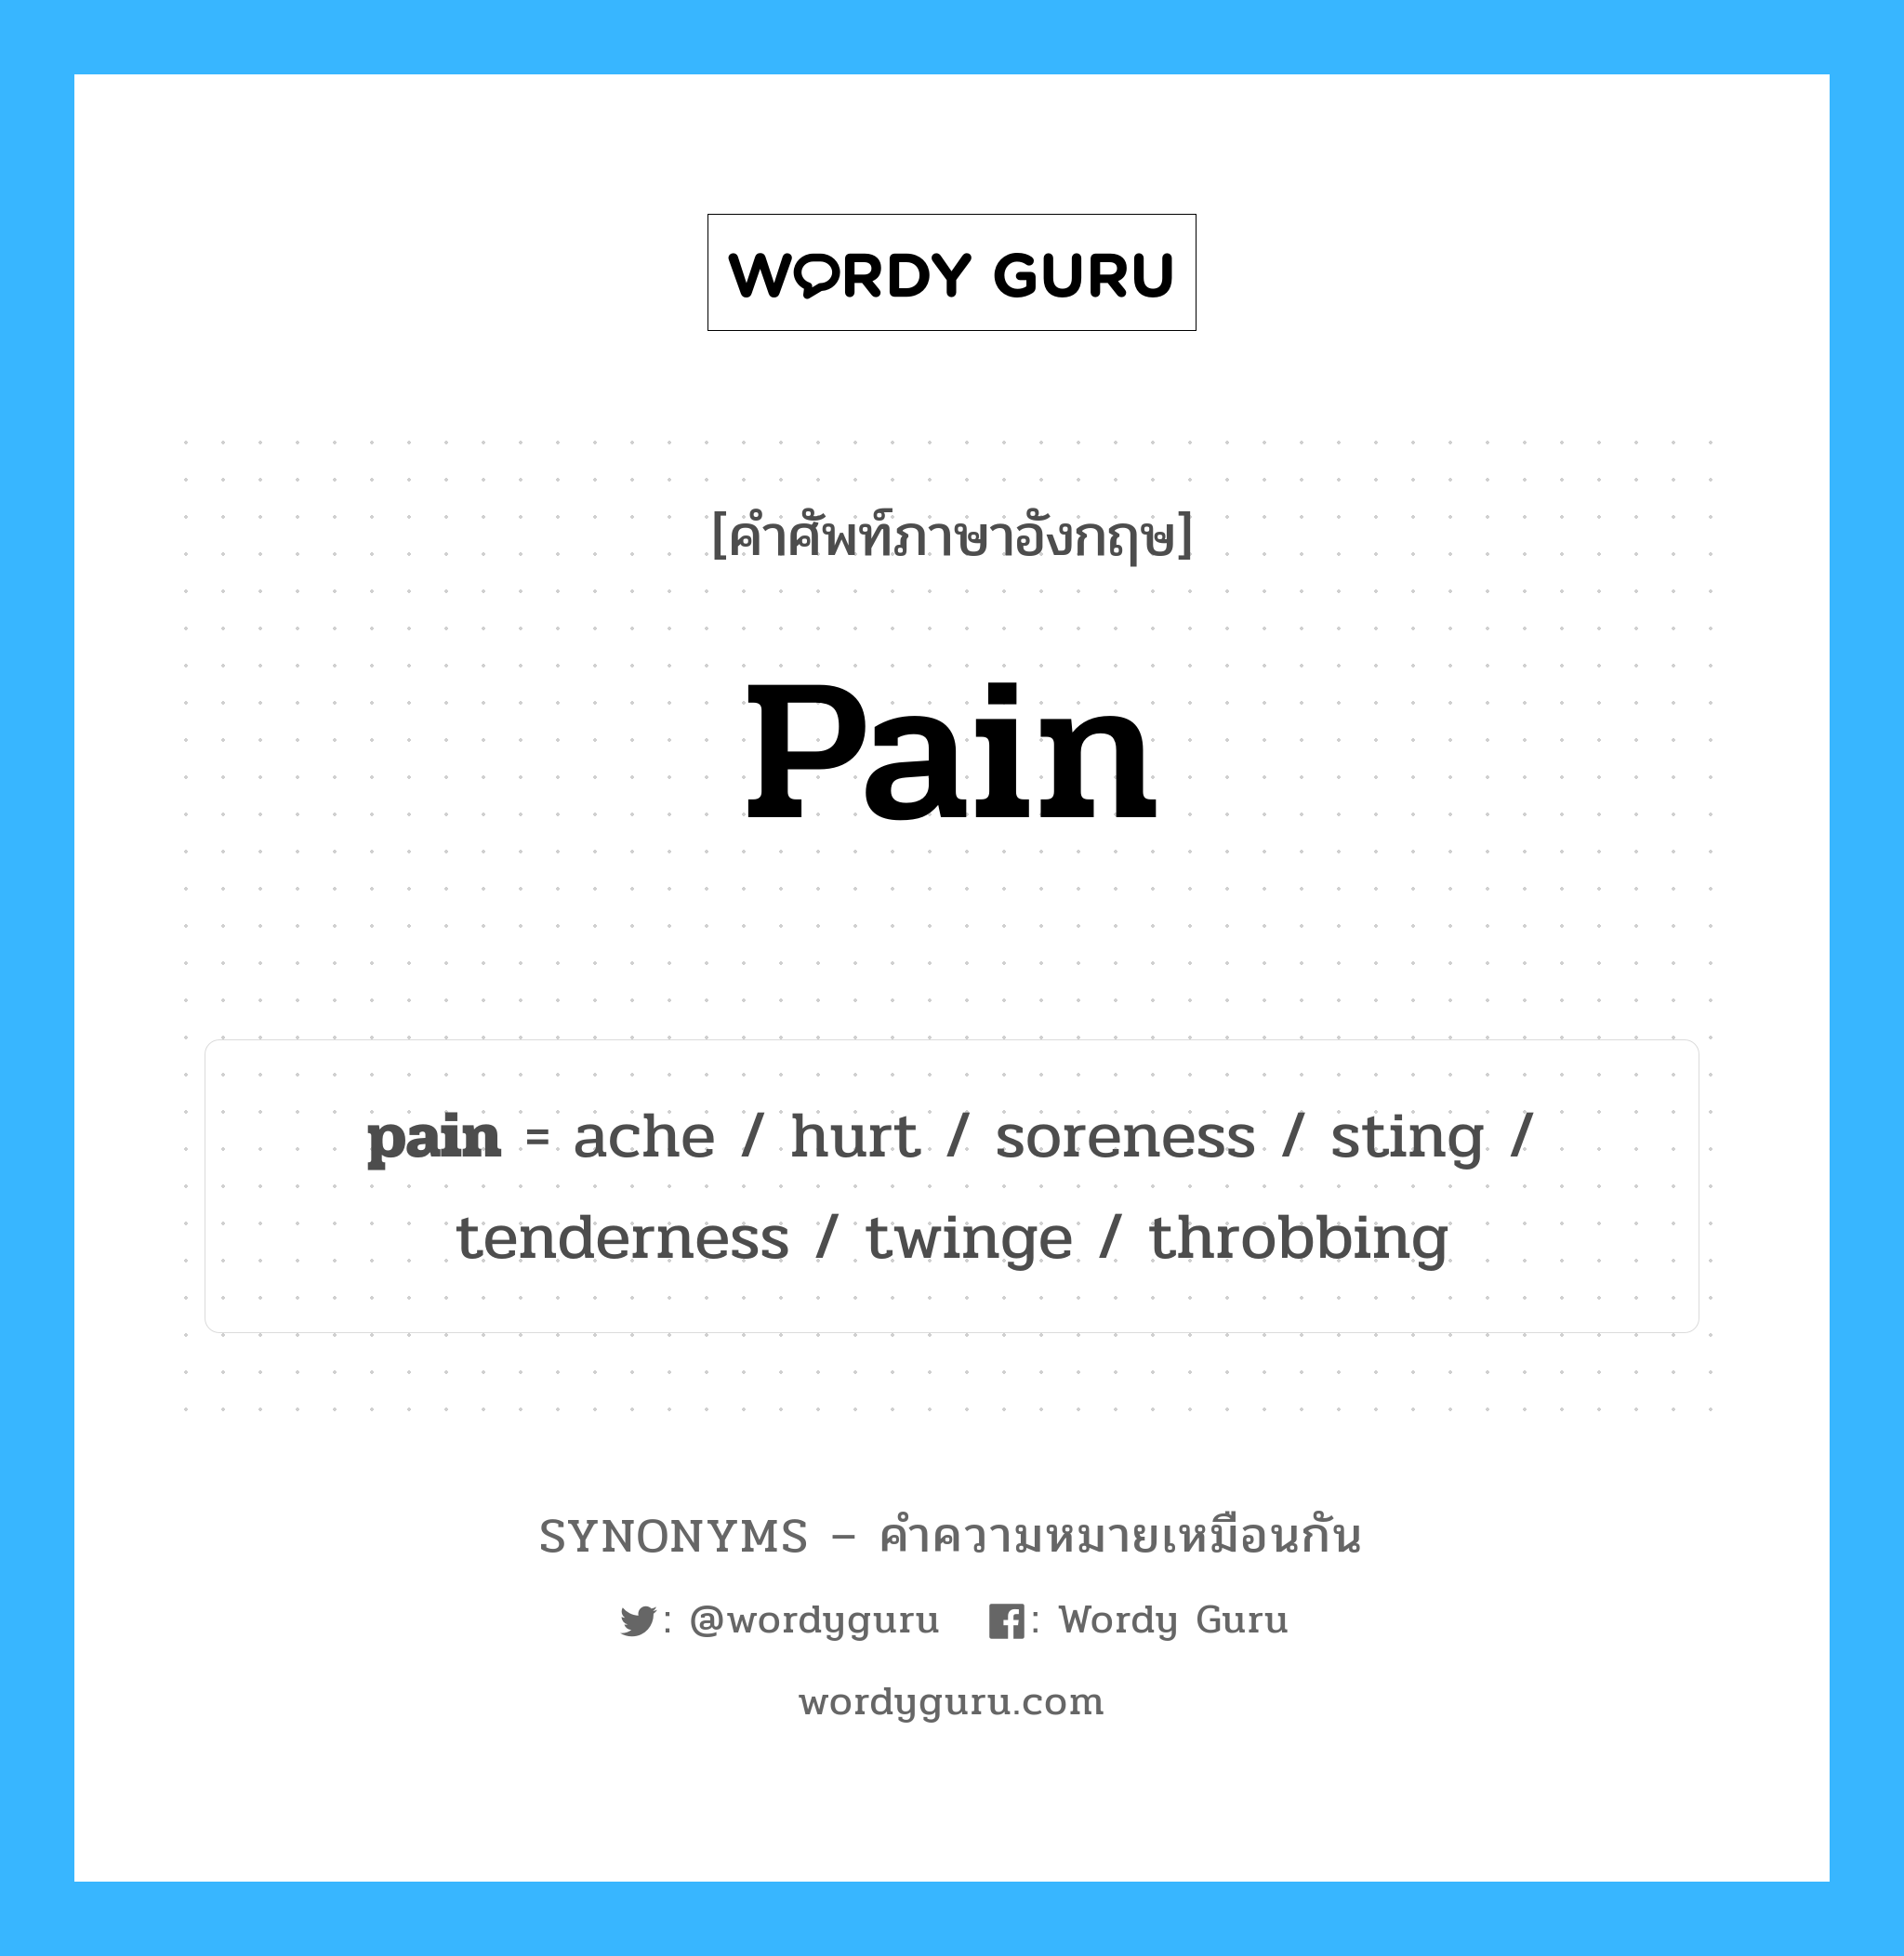 pain เป็นหนึ่งใน throbbing และมีคำอื่น ๆ อีกดังนี้, คำศัพท์ภาษาอังกฤษ pain ความหมายคล้ายกันกับ throbbing แปลว่า กระเพื่อม หมวด throbbing